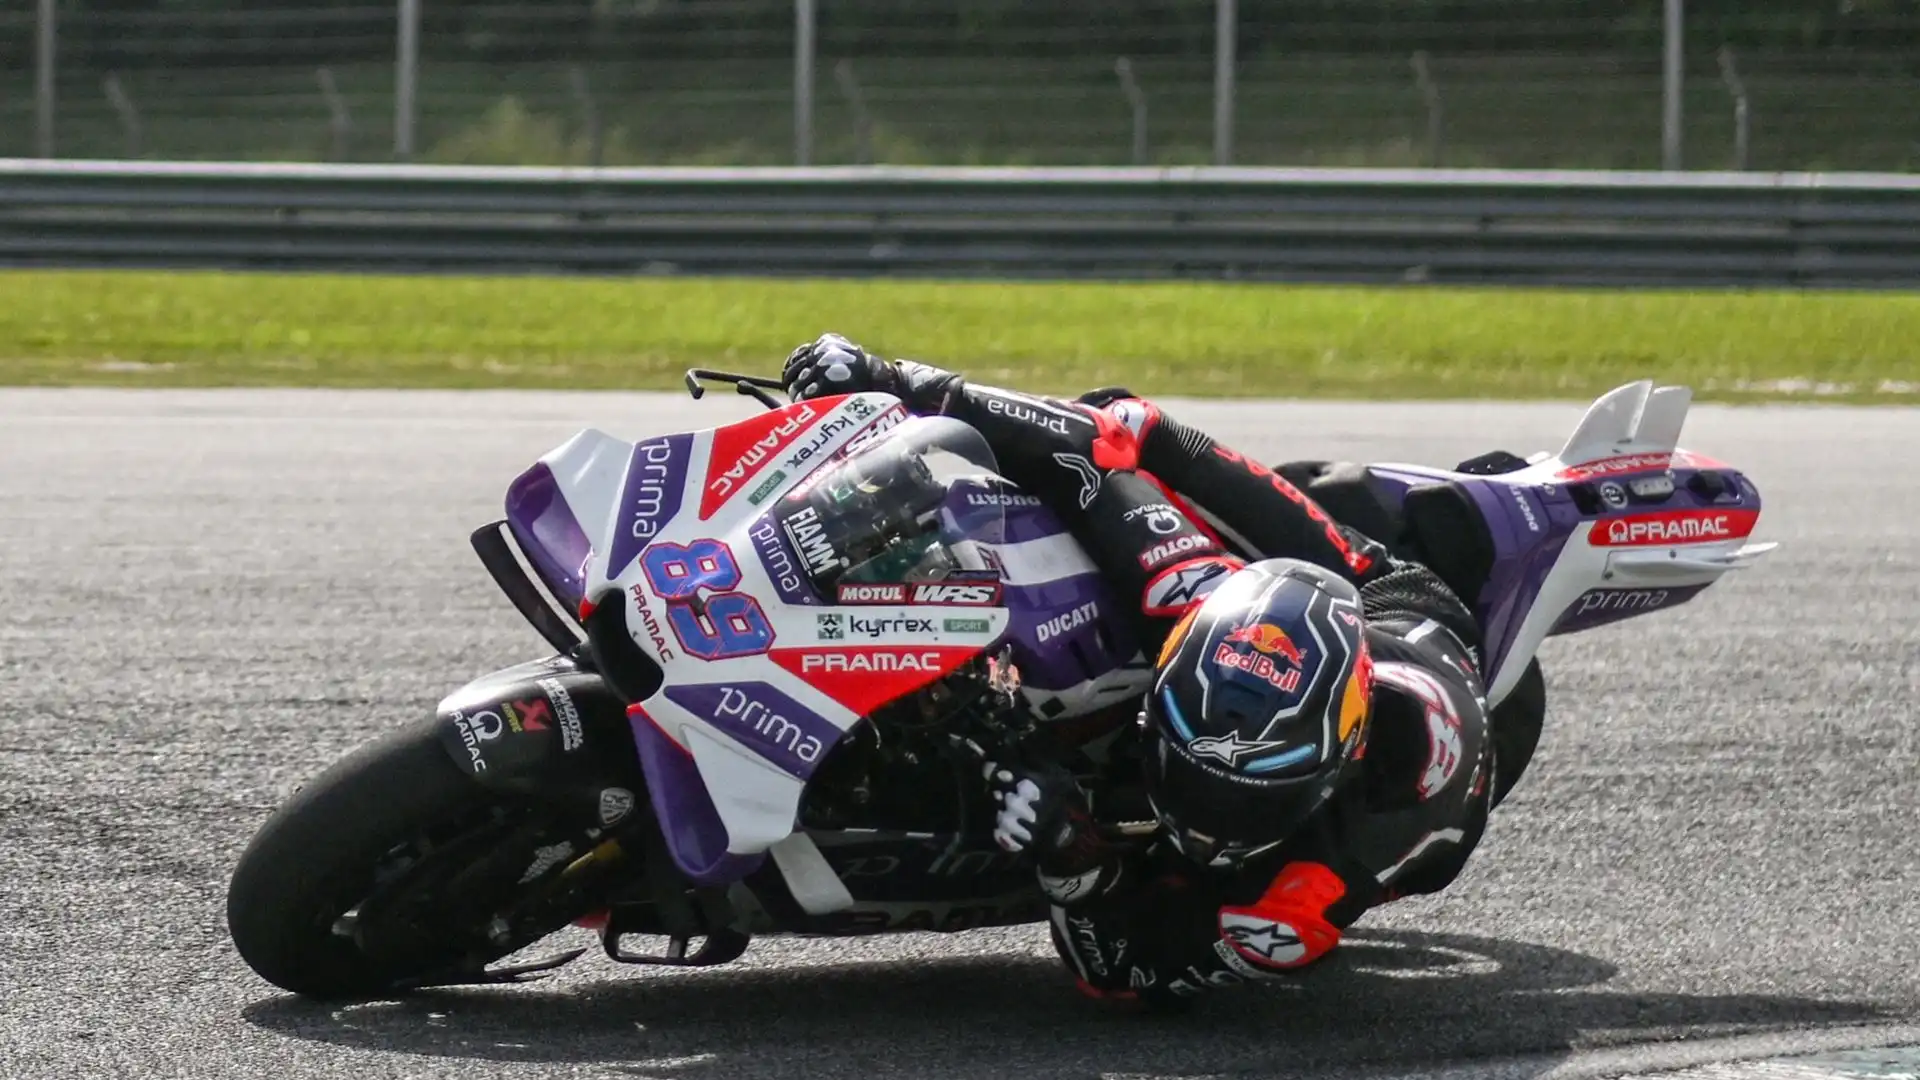 L'obiettivo di Jorge Martin oltre al titolo è quello di conquistare una moto nel team ufficiale Ducati nel 2025